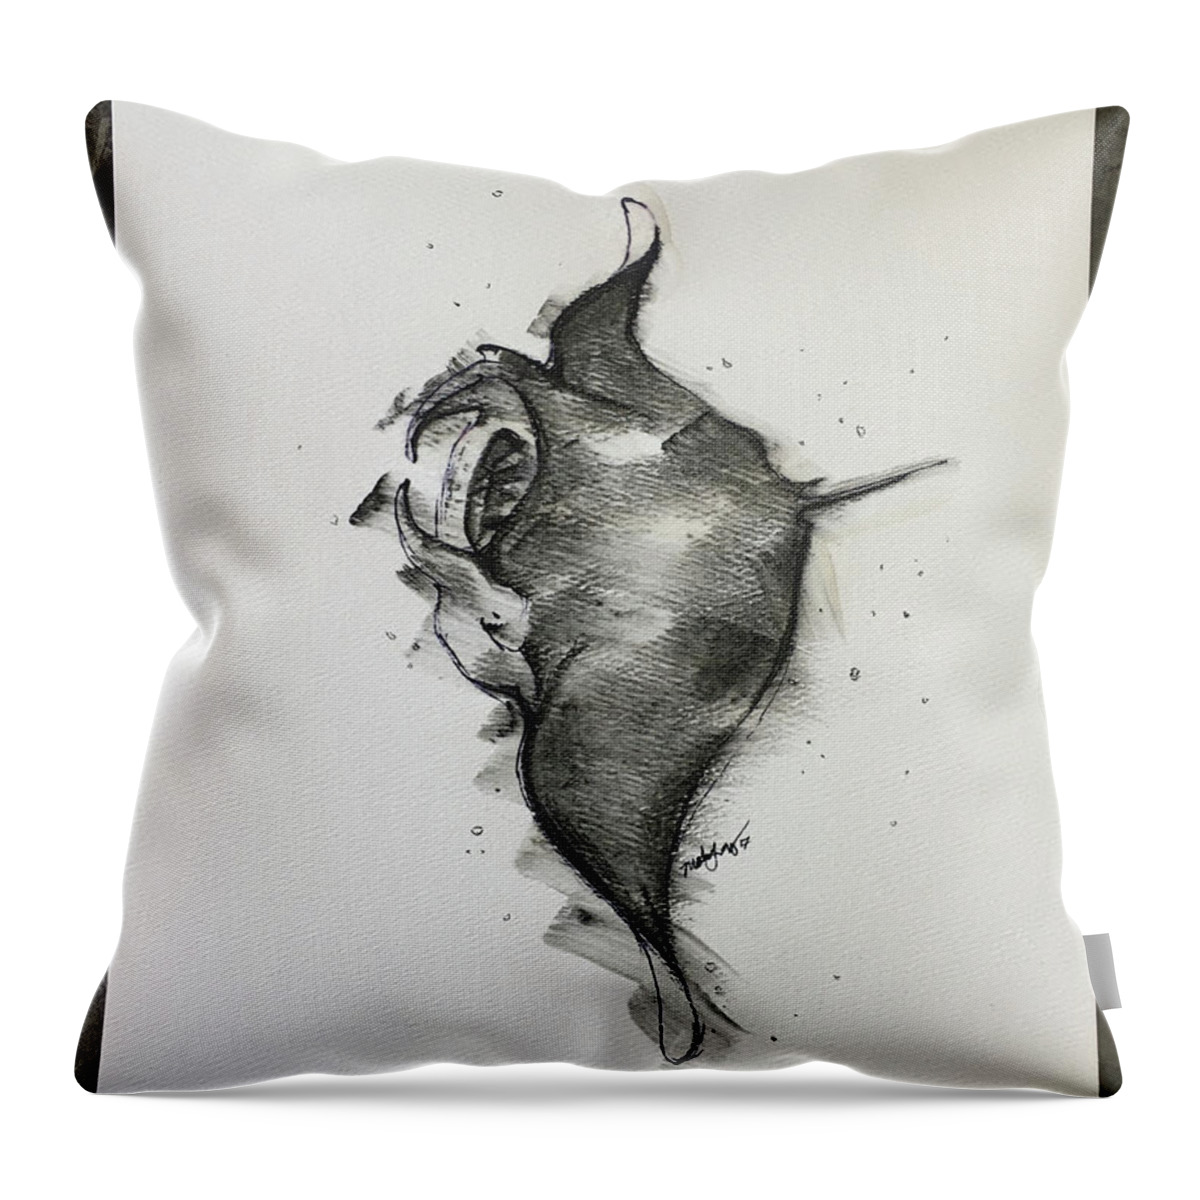 Charcoal Manta Ray Throw Pillow